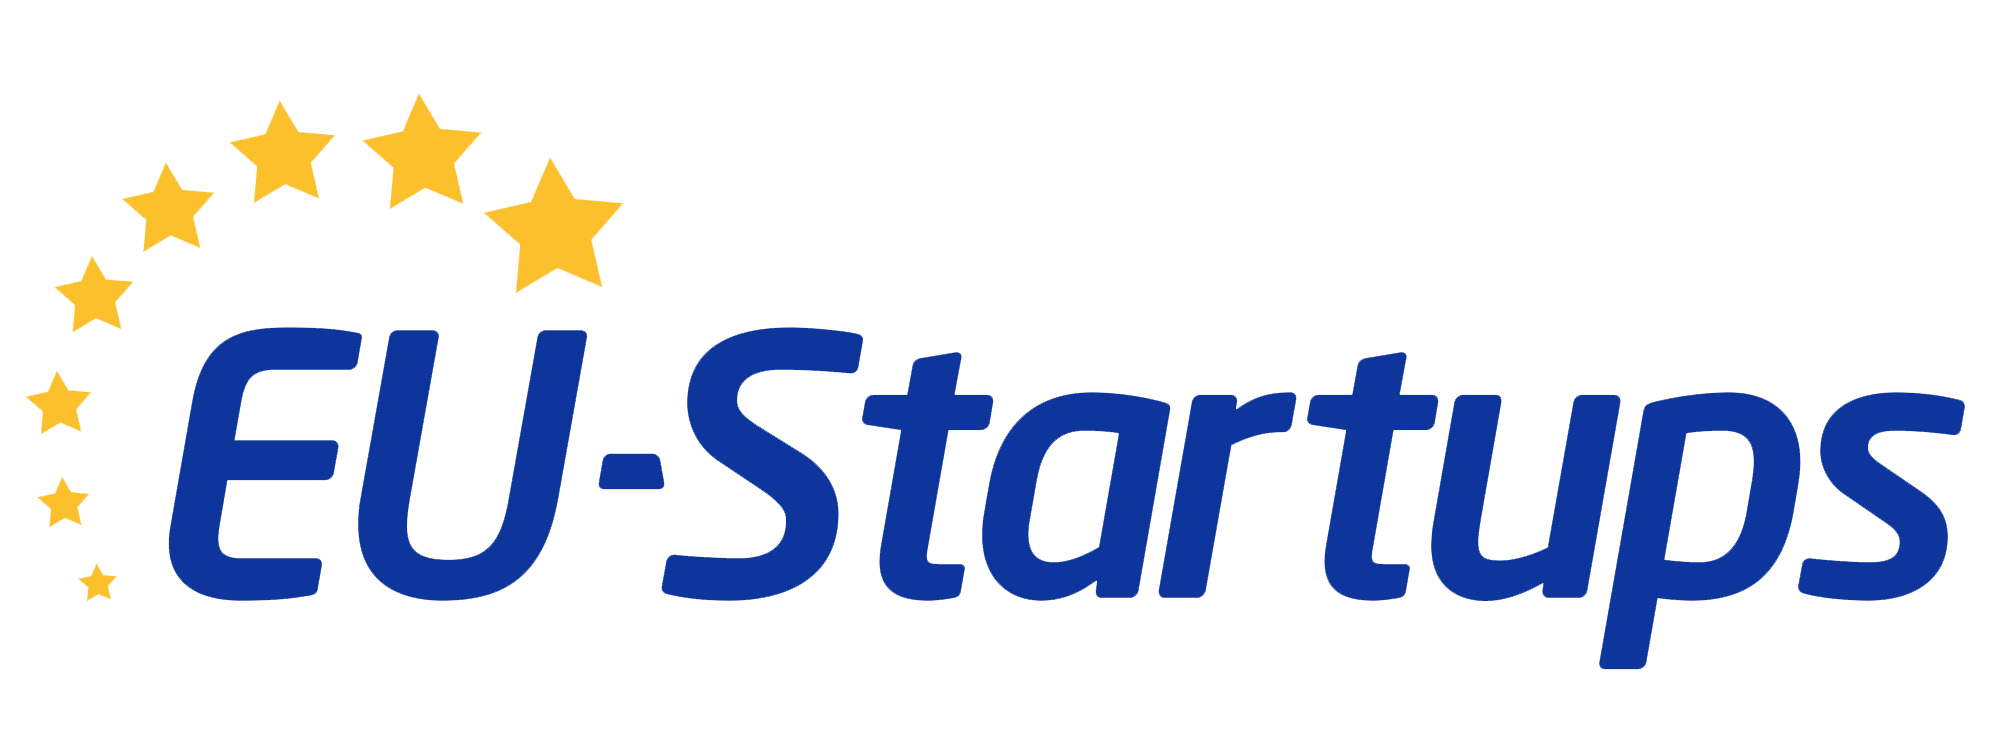 UE-Startu-uri | În centrul atenției startup-urile europene